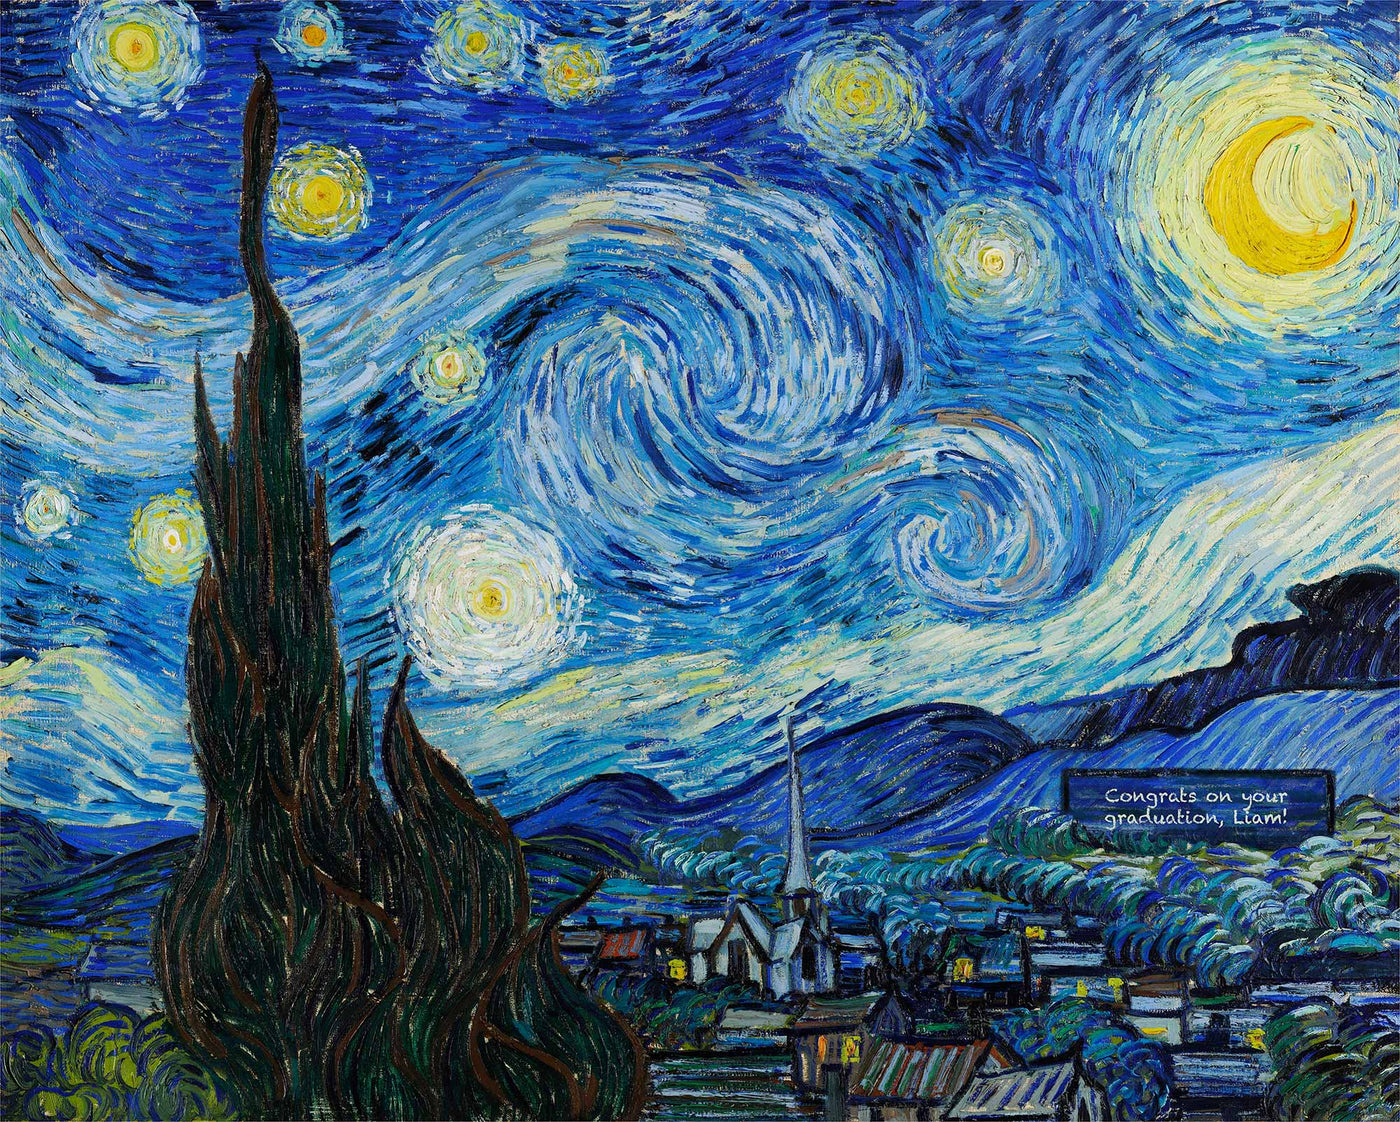 La nuit étoilée de Vincent van Gogh, 1889 - Beaux-arts personnalisés